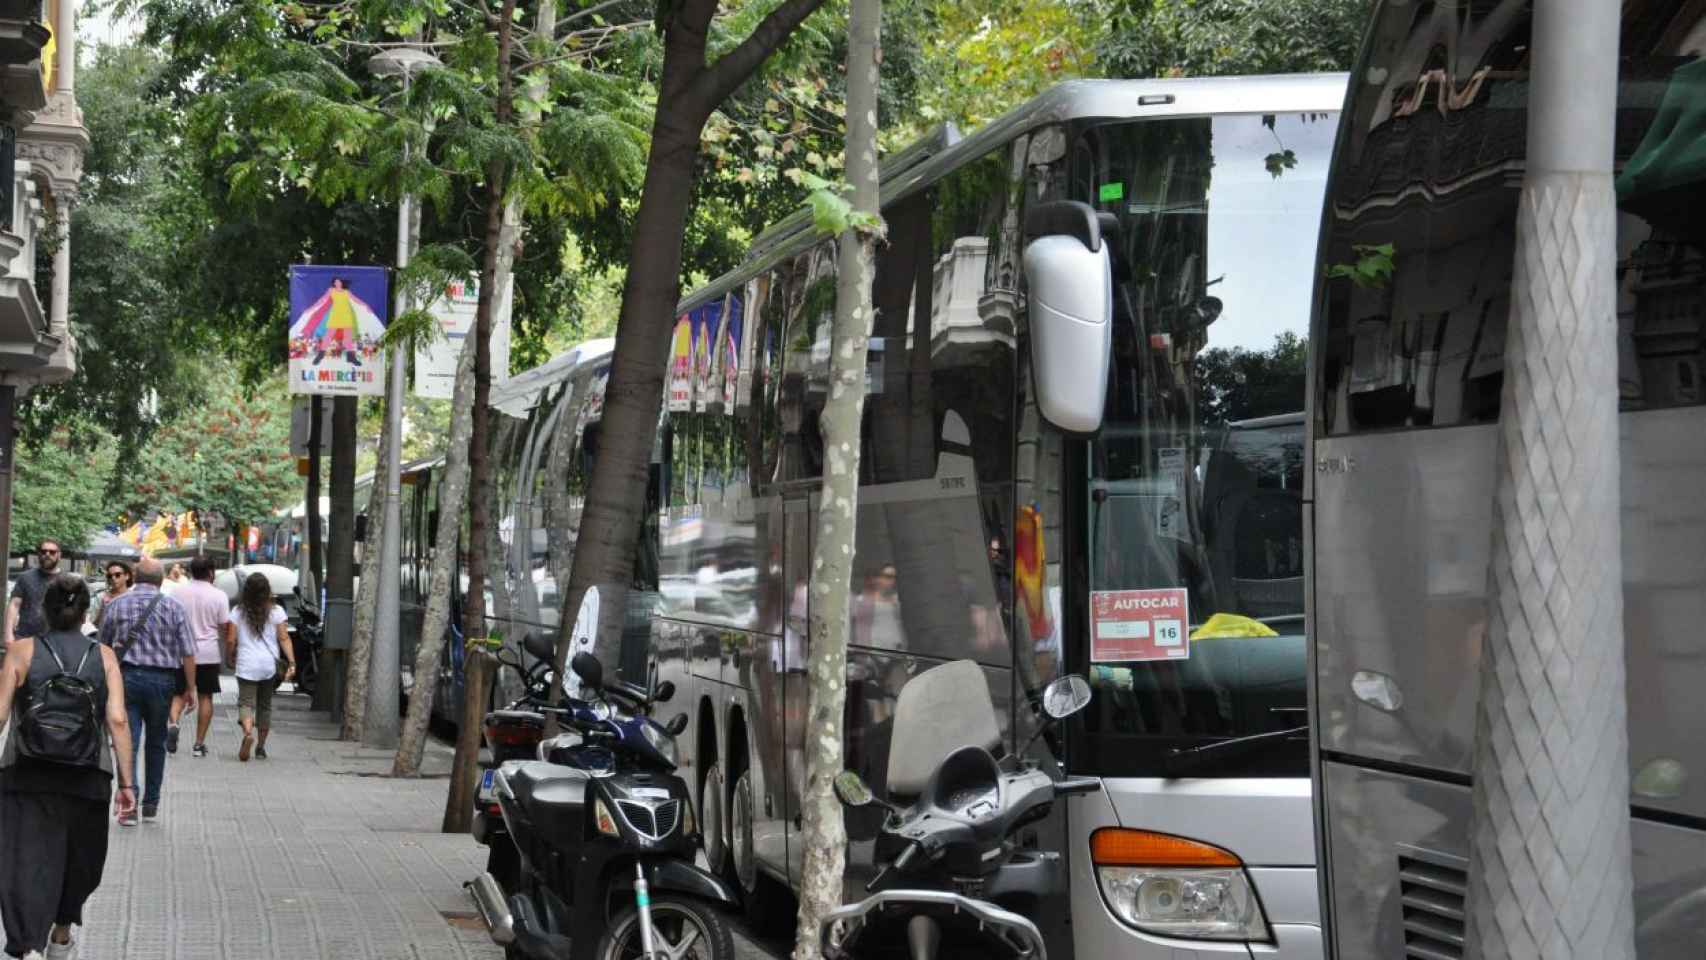 Autocares de otras ciudades y poblaciones aparcados en Barcelona / M. A. S.